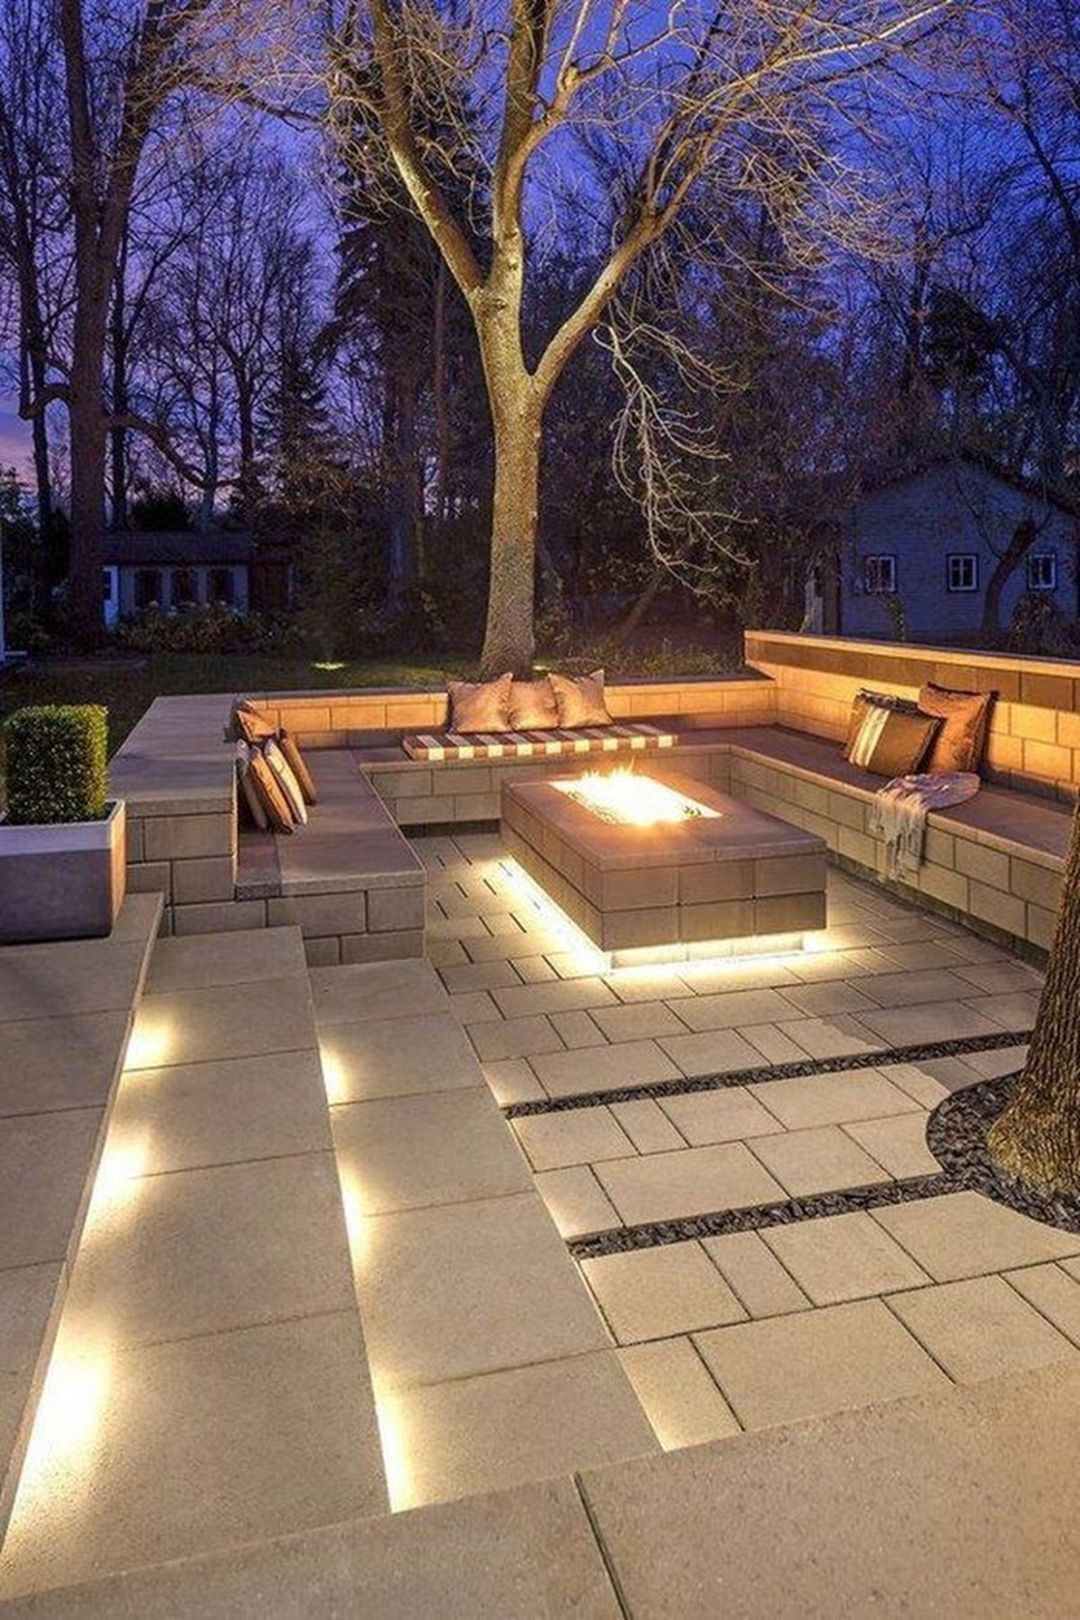 15 Comfortable Backyard Patio Design Ideas For Autumn Season Inspiration